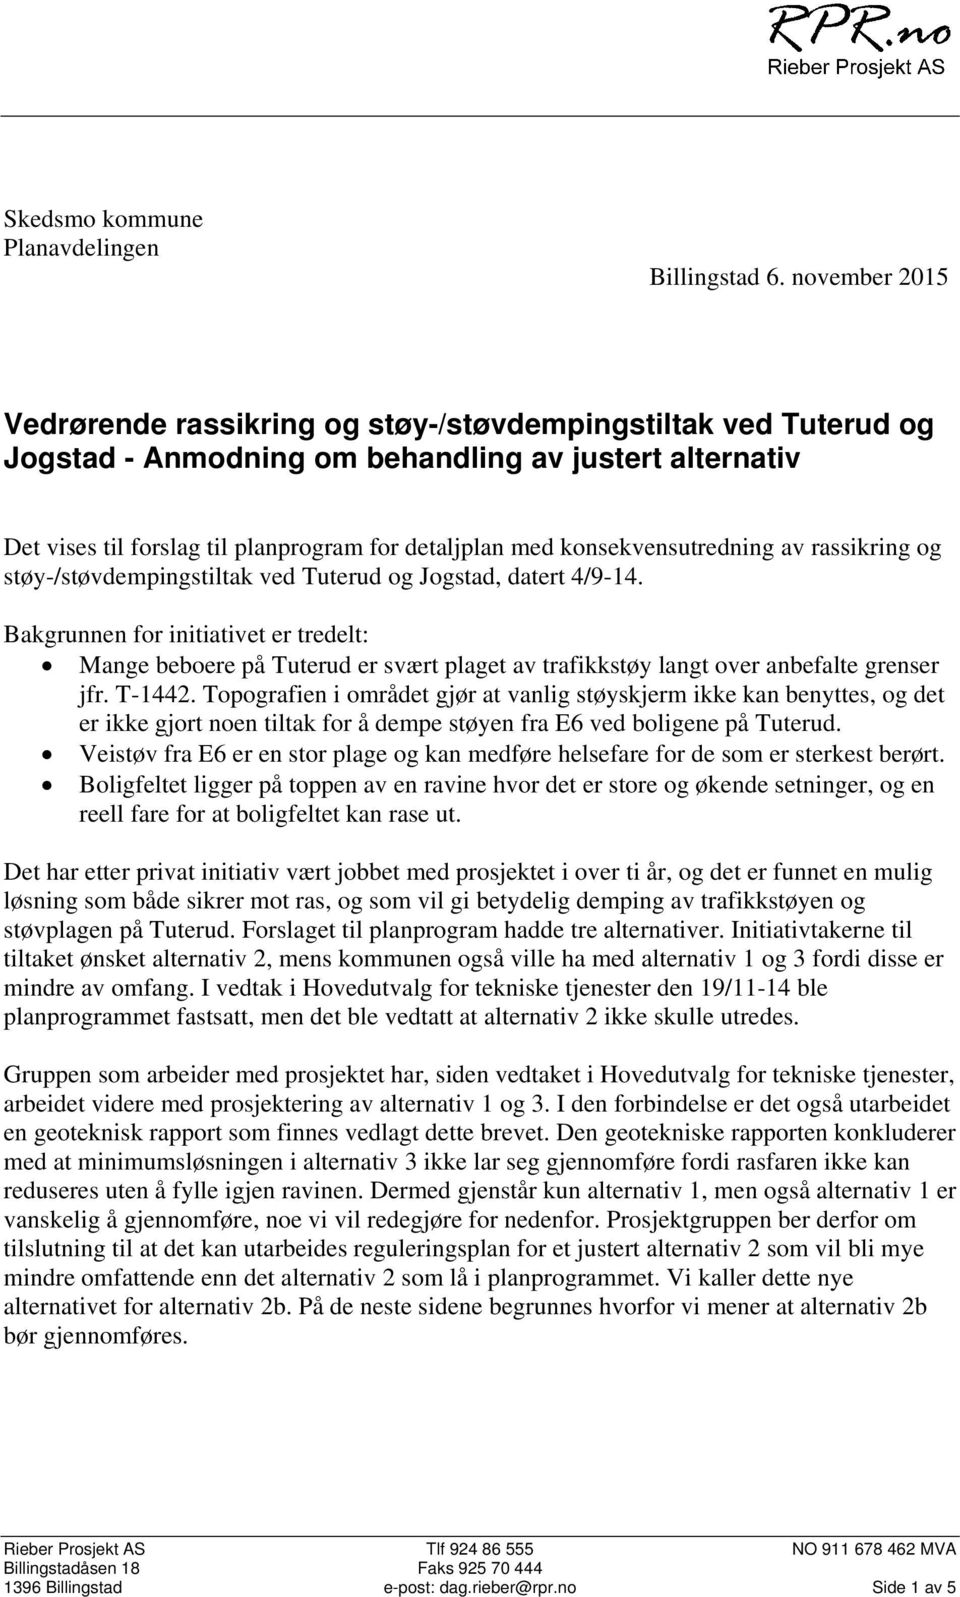 konsekvensutredning av rassikring og støy-/støvdempingstiltak ved Tuterud og Jogstad, datert 4/9-14.